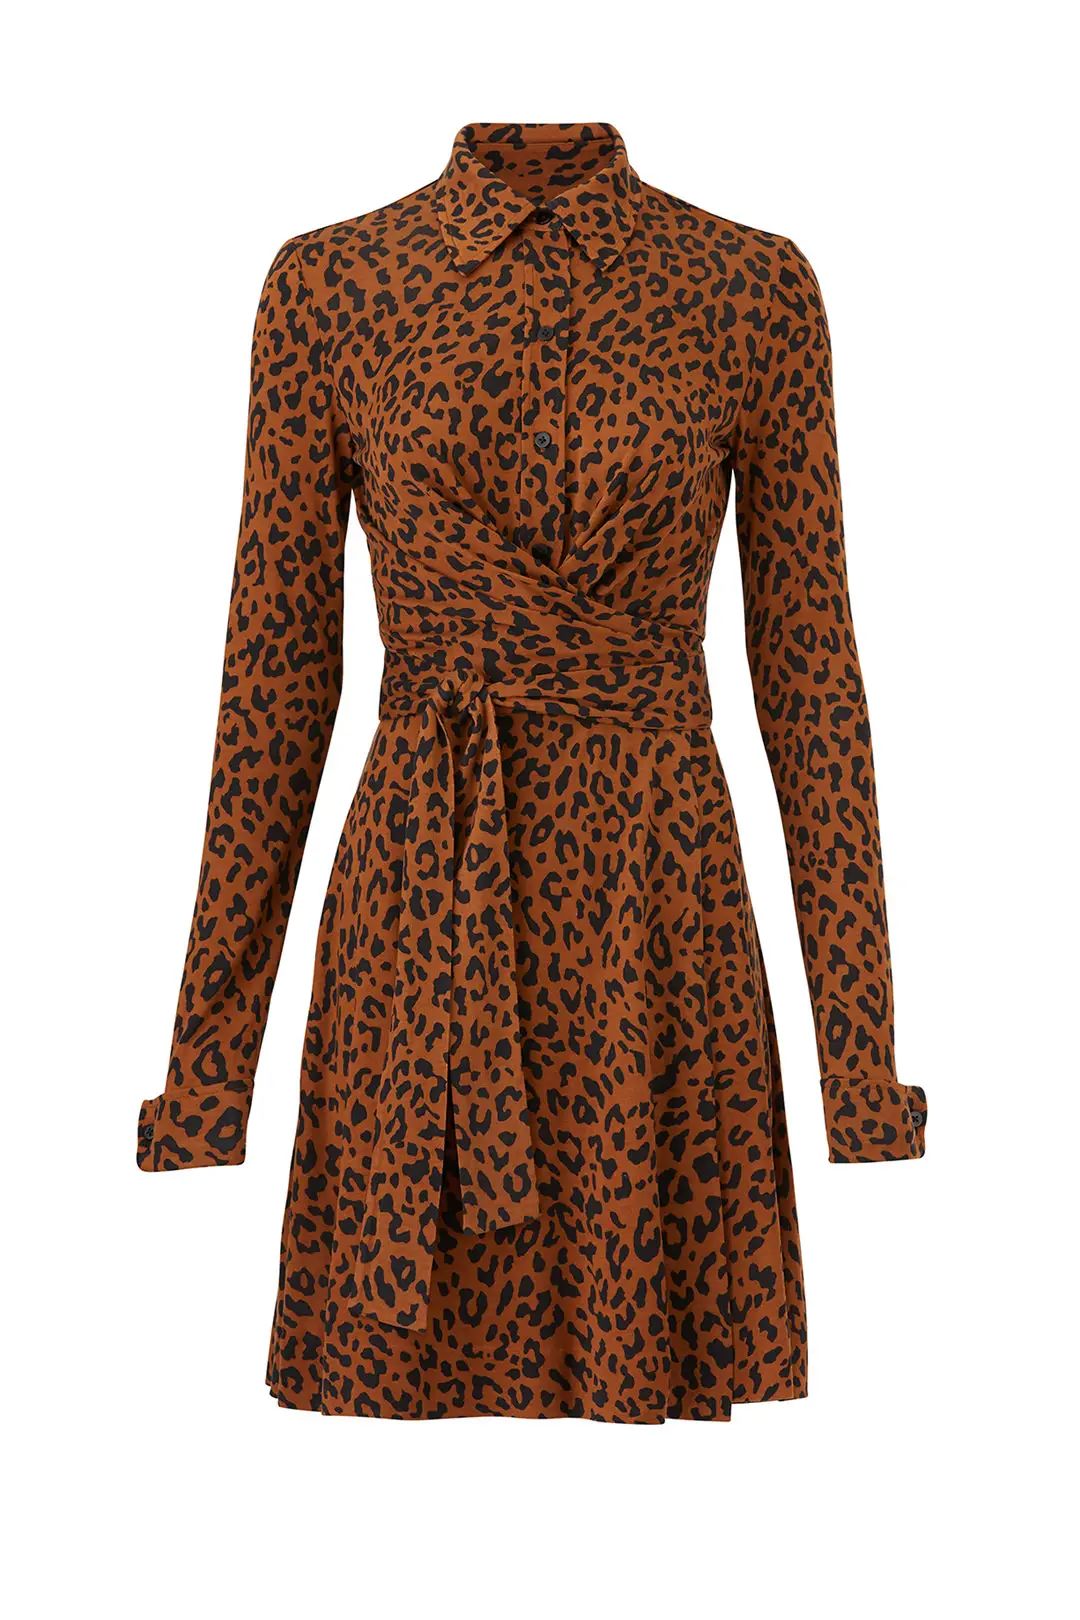 Diane von Furstenberg Leopard Side Tie Shirtdress | Rent The Runway